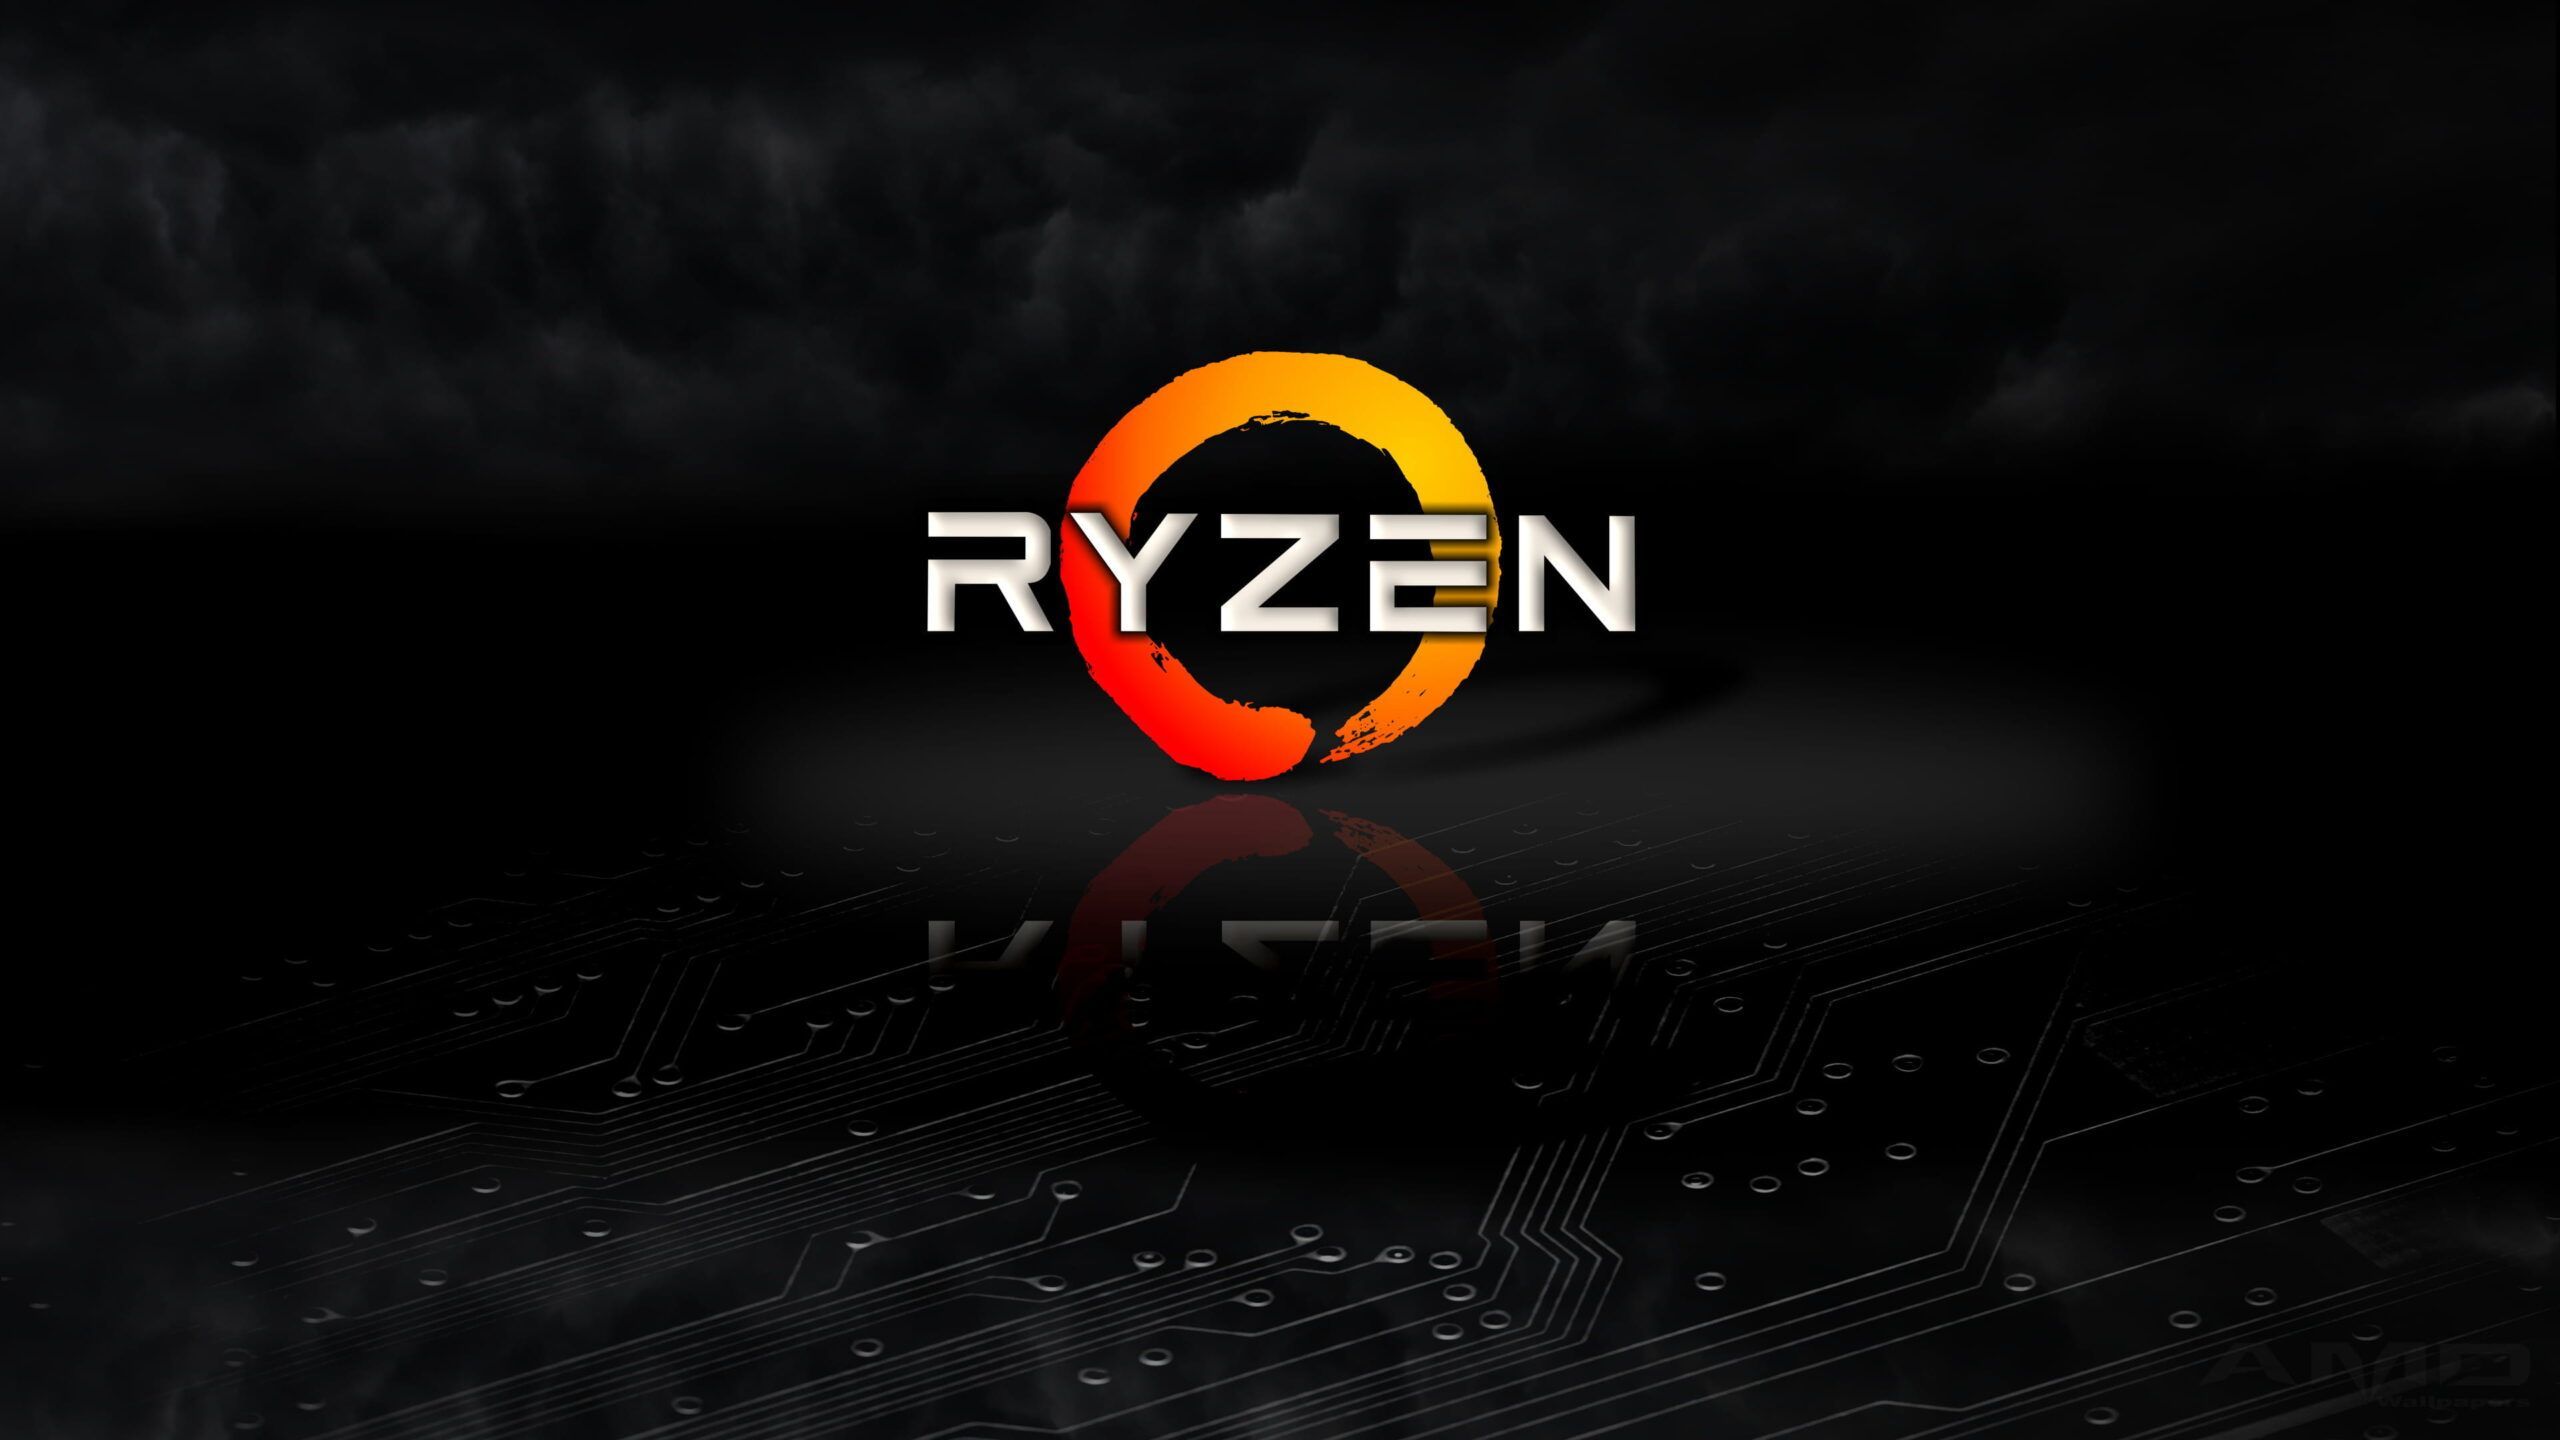 AMD Ryzen HD Desktop Wallpaper. Desktop wallpaper, HD desktop, Amd